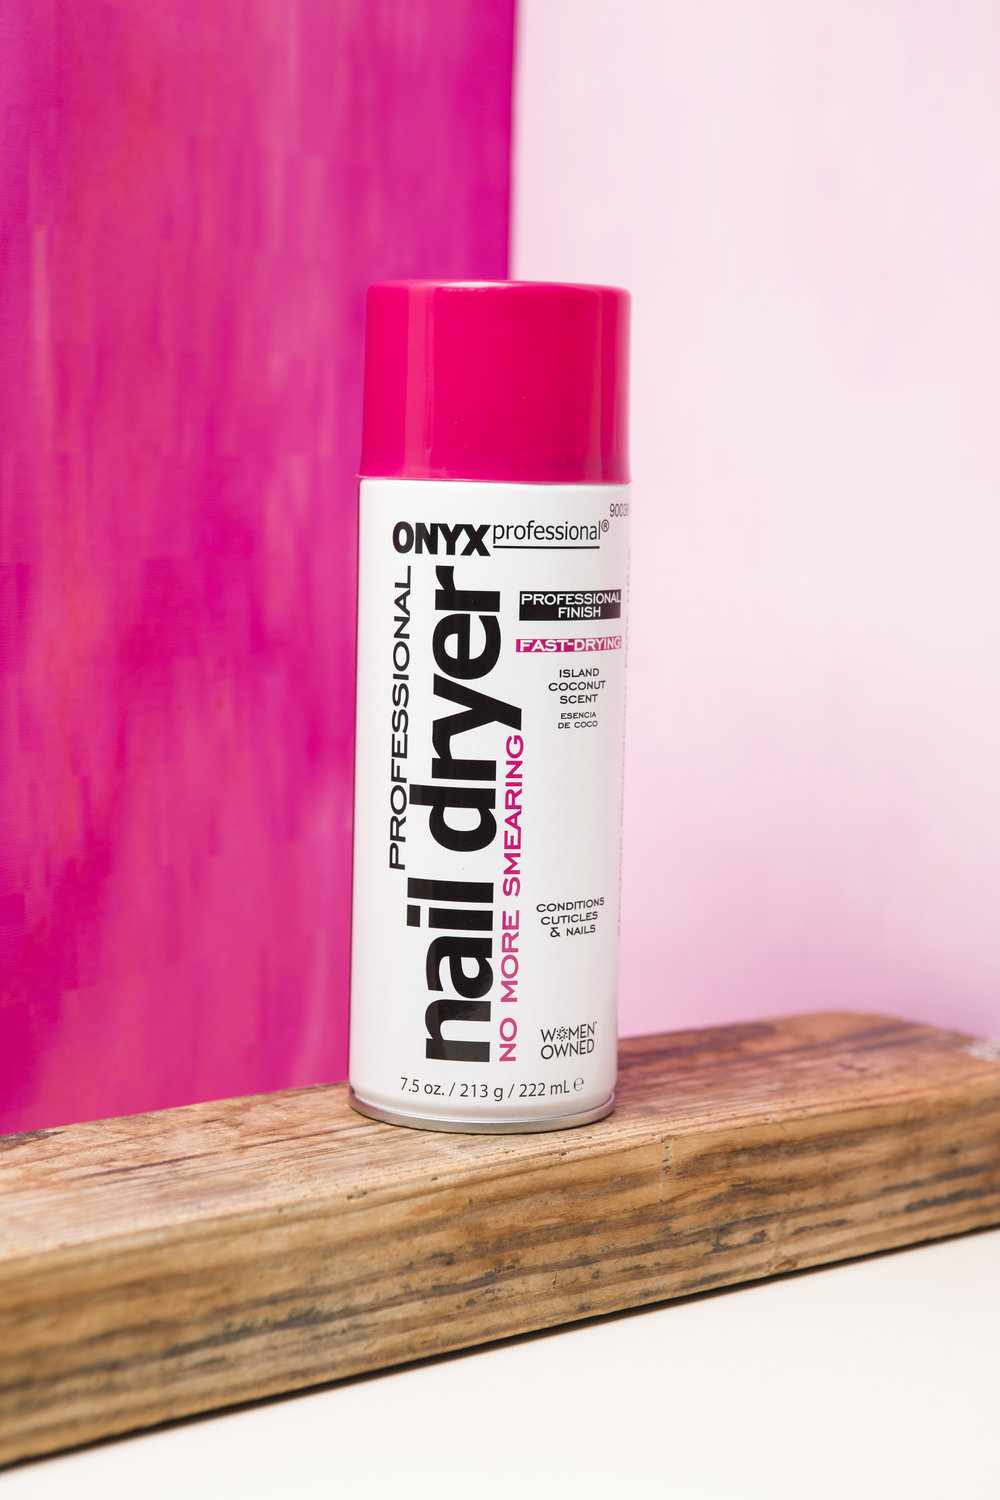 7.5 oz. Nail Dryer Spray — ONYX Brands